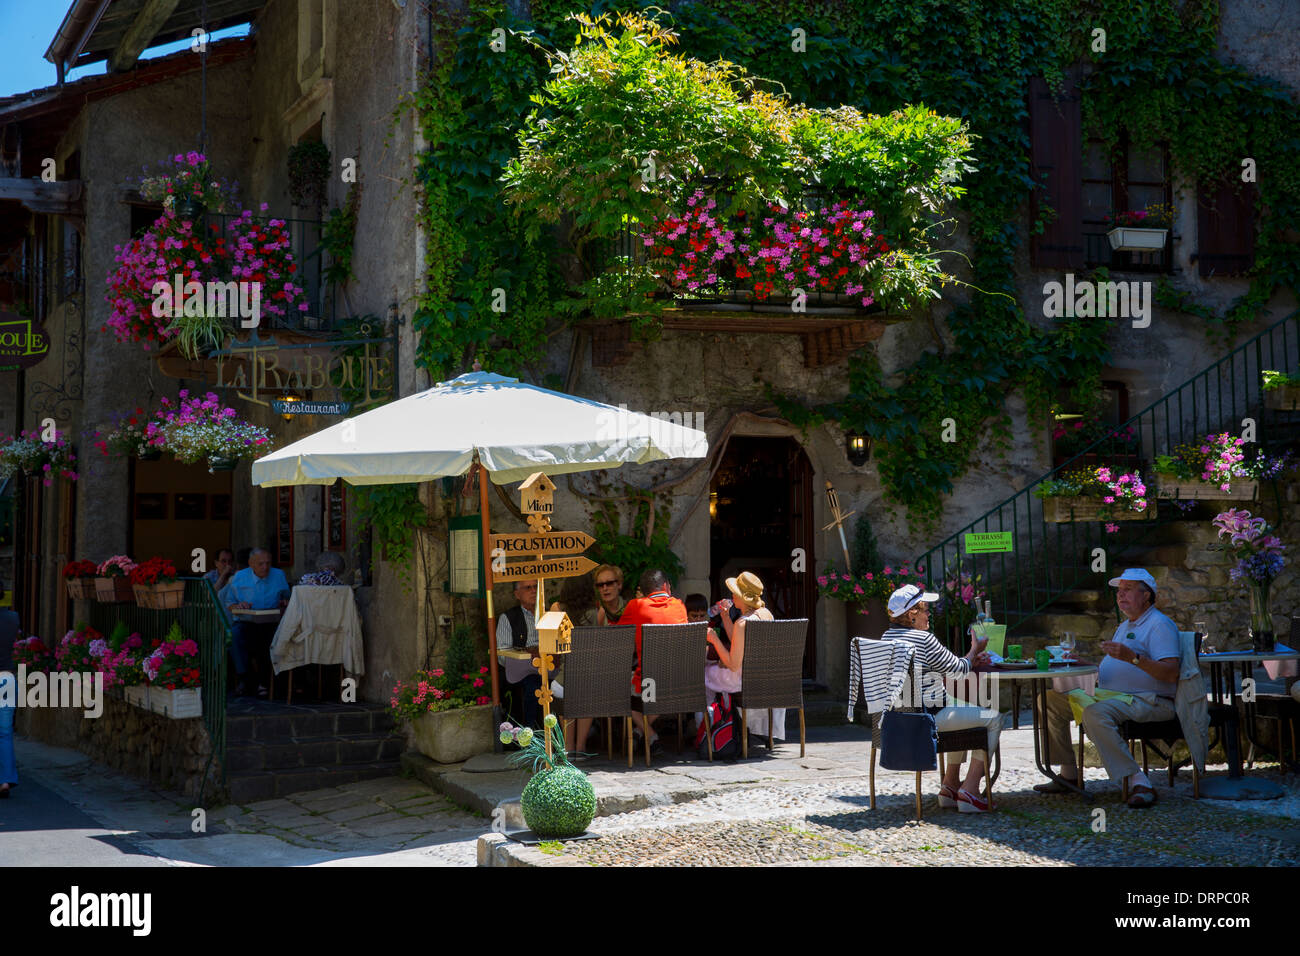 American Diner im Restaurant-Café La Raboue in der historischen mittelalterlichen Stadtteil Yvoire von Lac Léman, Genfersee, Frankreich Stockfoto